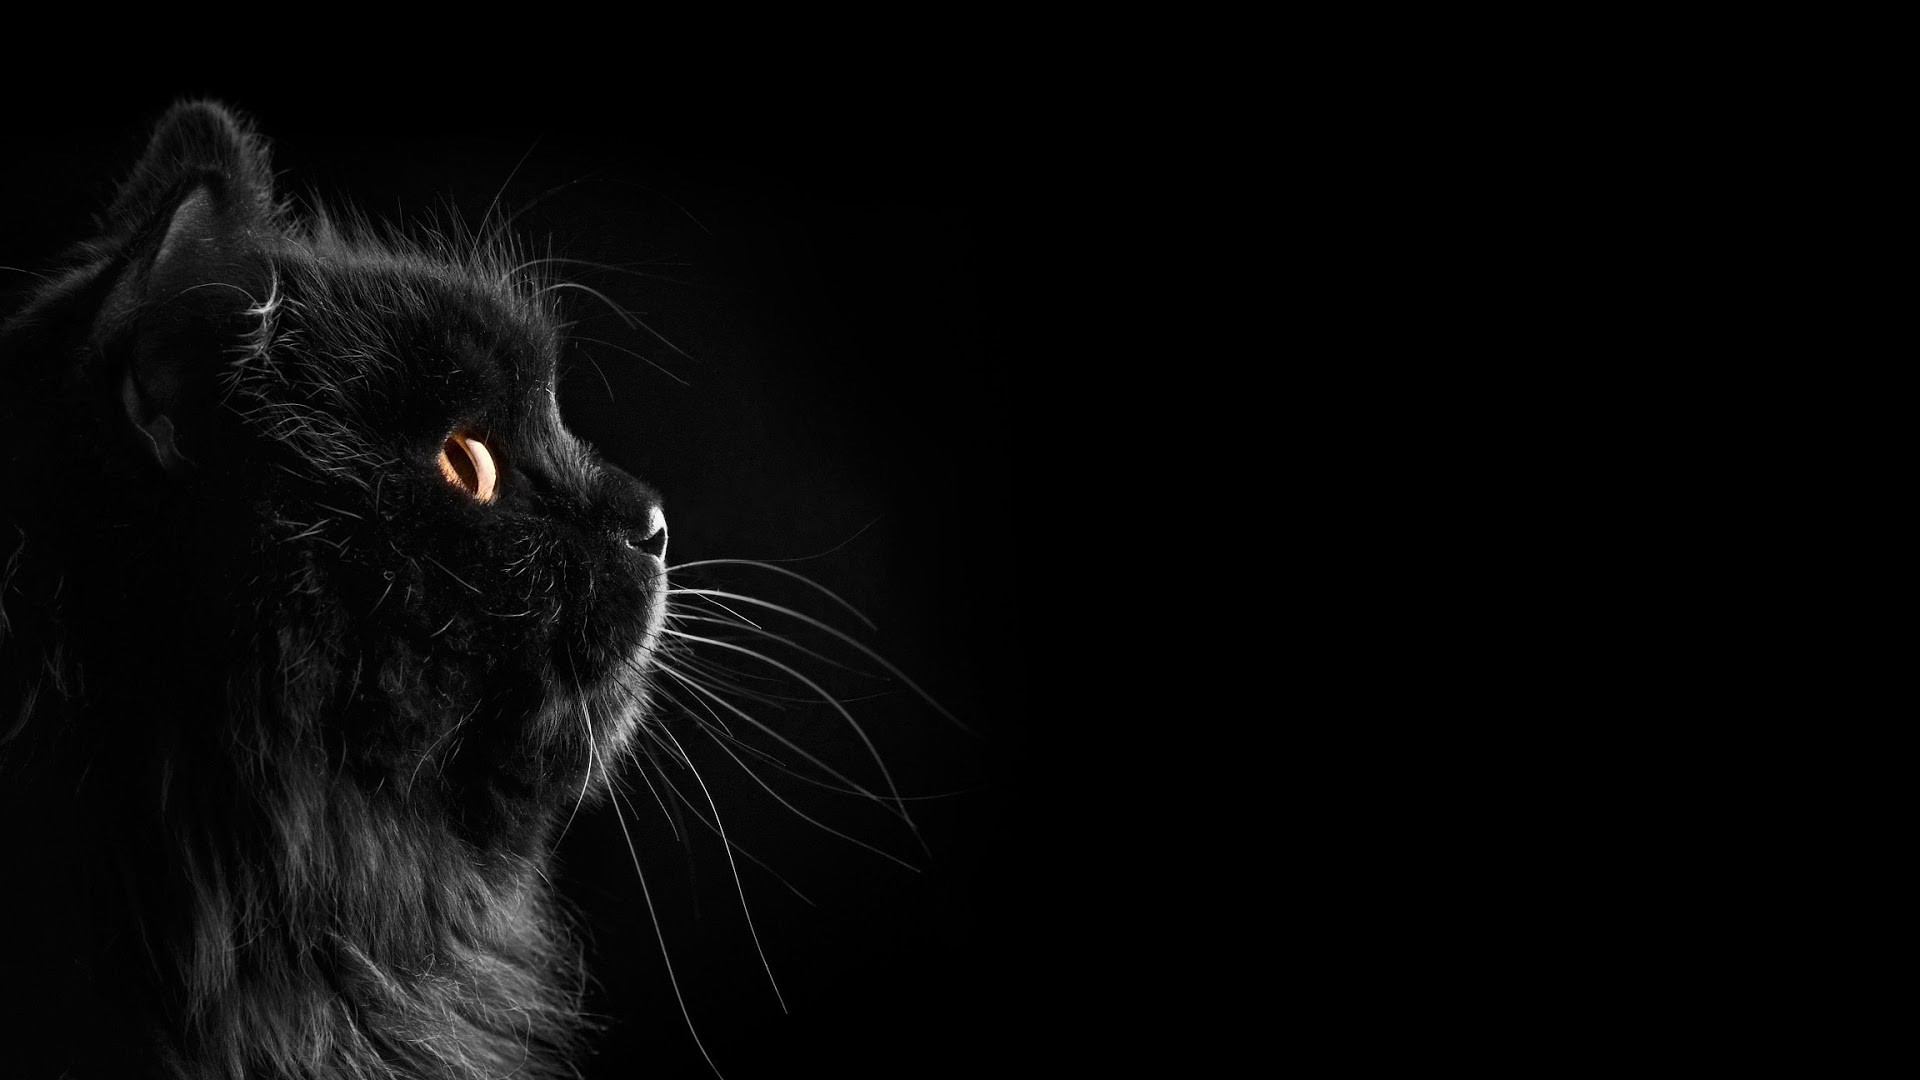 Бесплатное фото Черная кошка на черном фоне